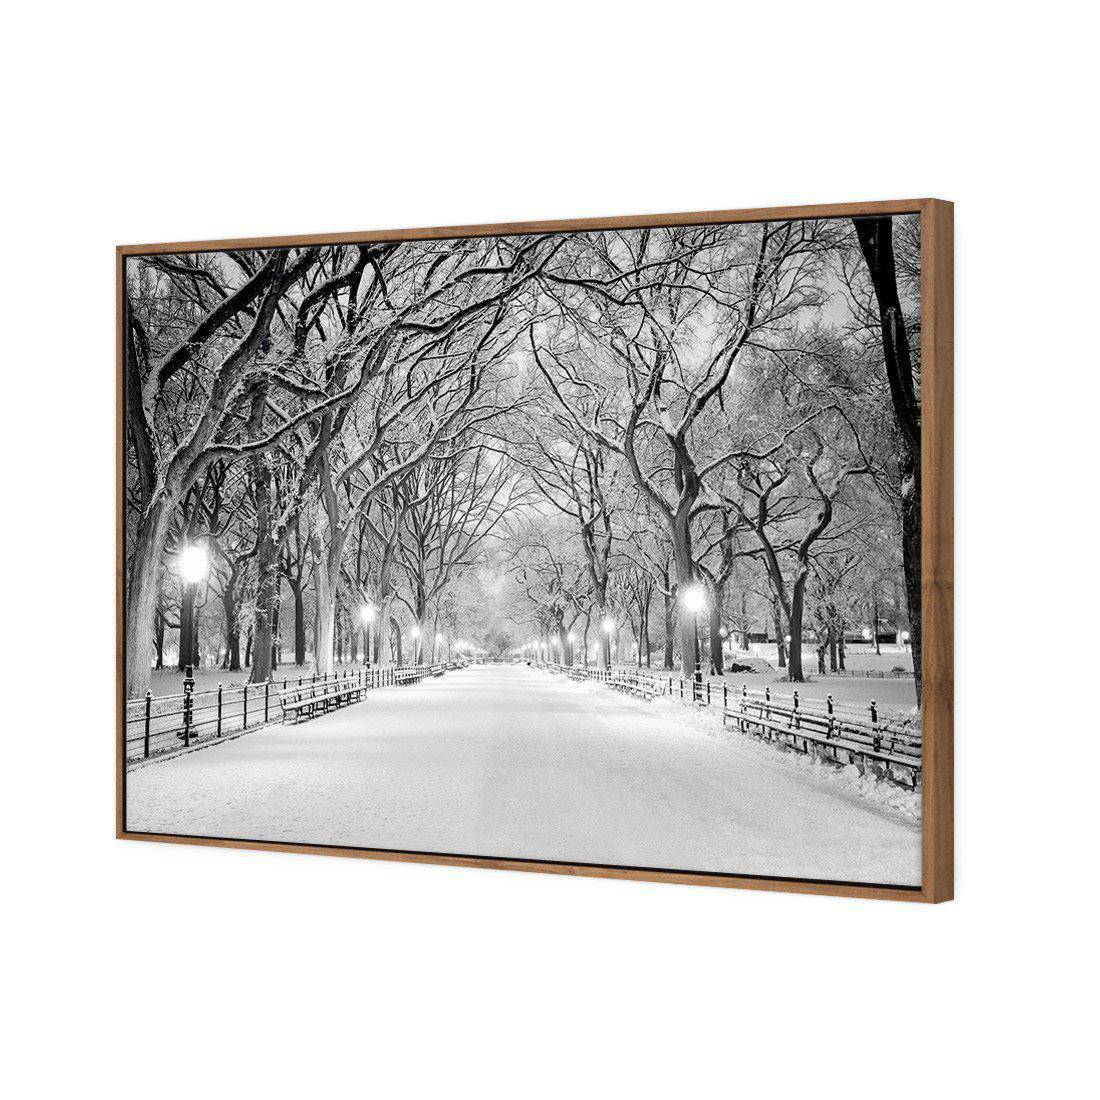 Central Park Dawn in Snow Canvas Art-Canvas-Wall Art Designs-45x30cm-Canvas - Natural Frame-Wall Art Designs